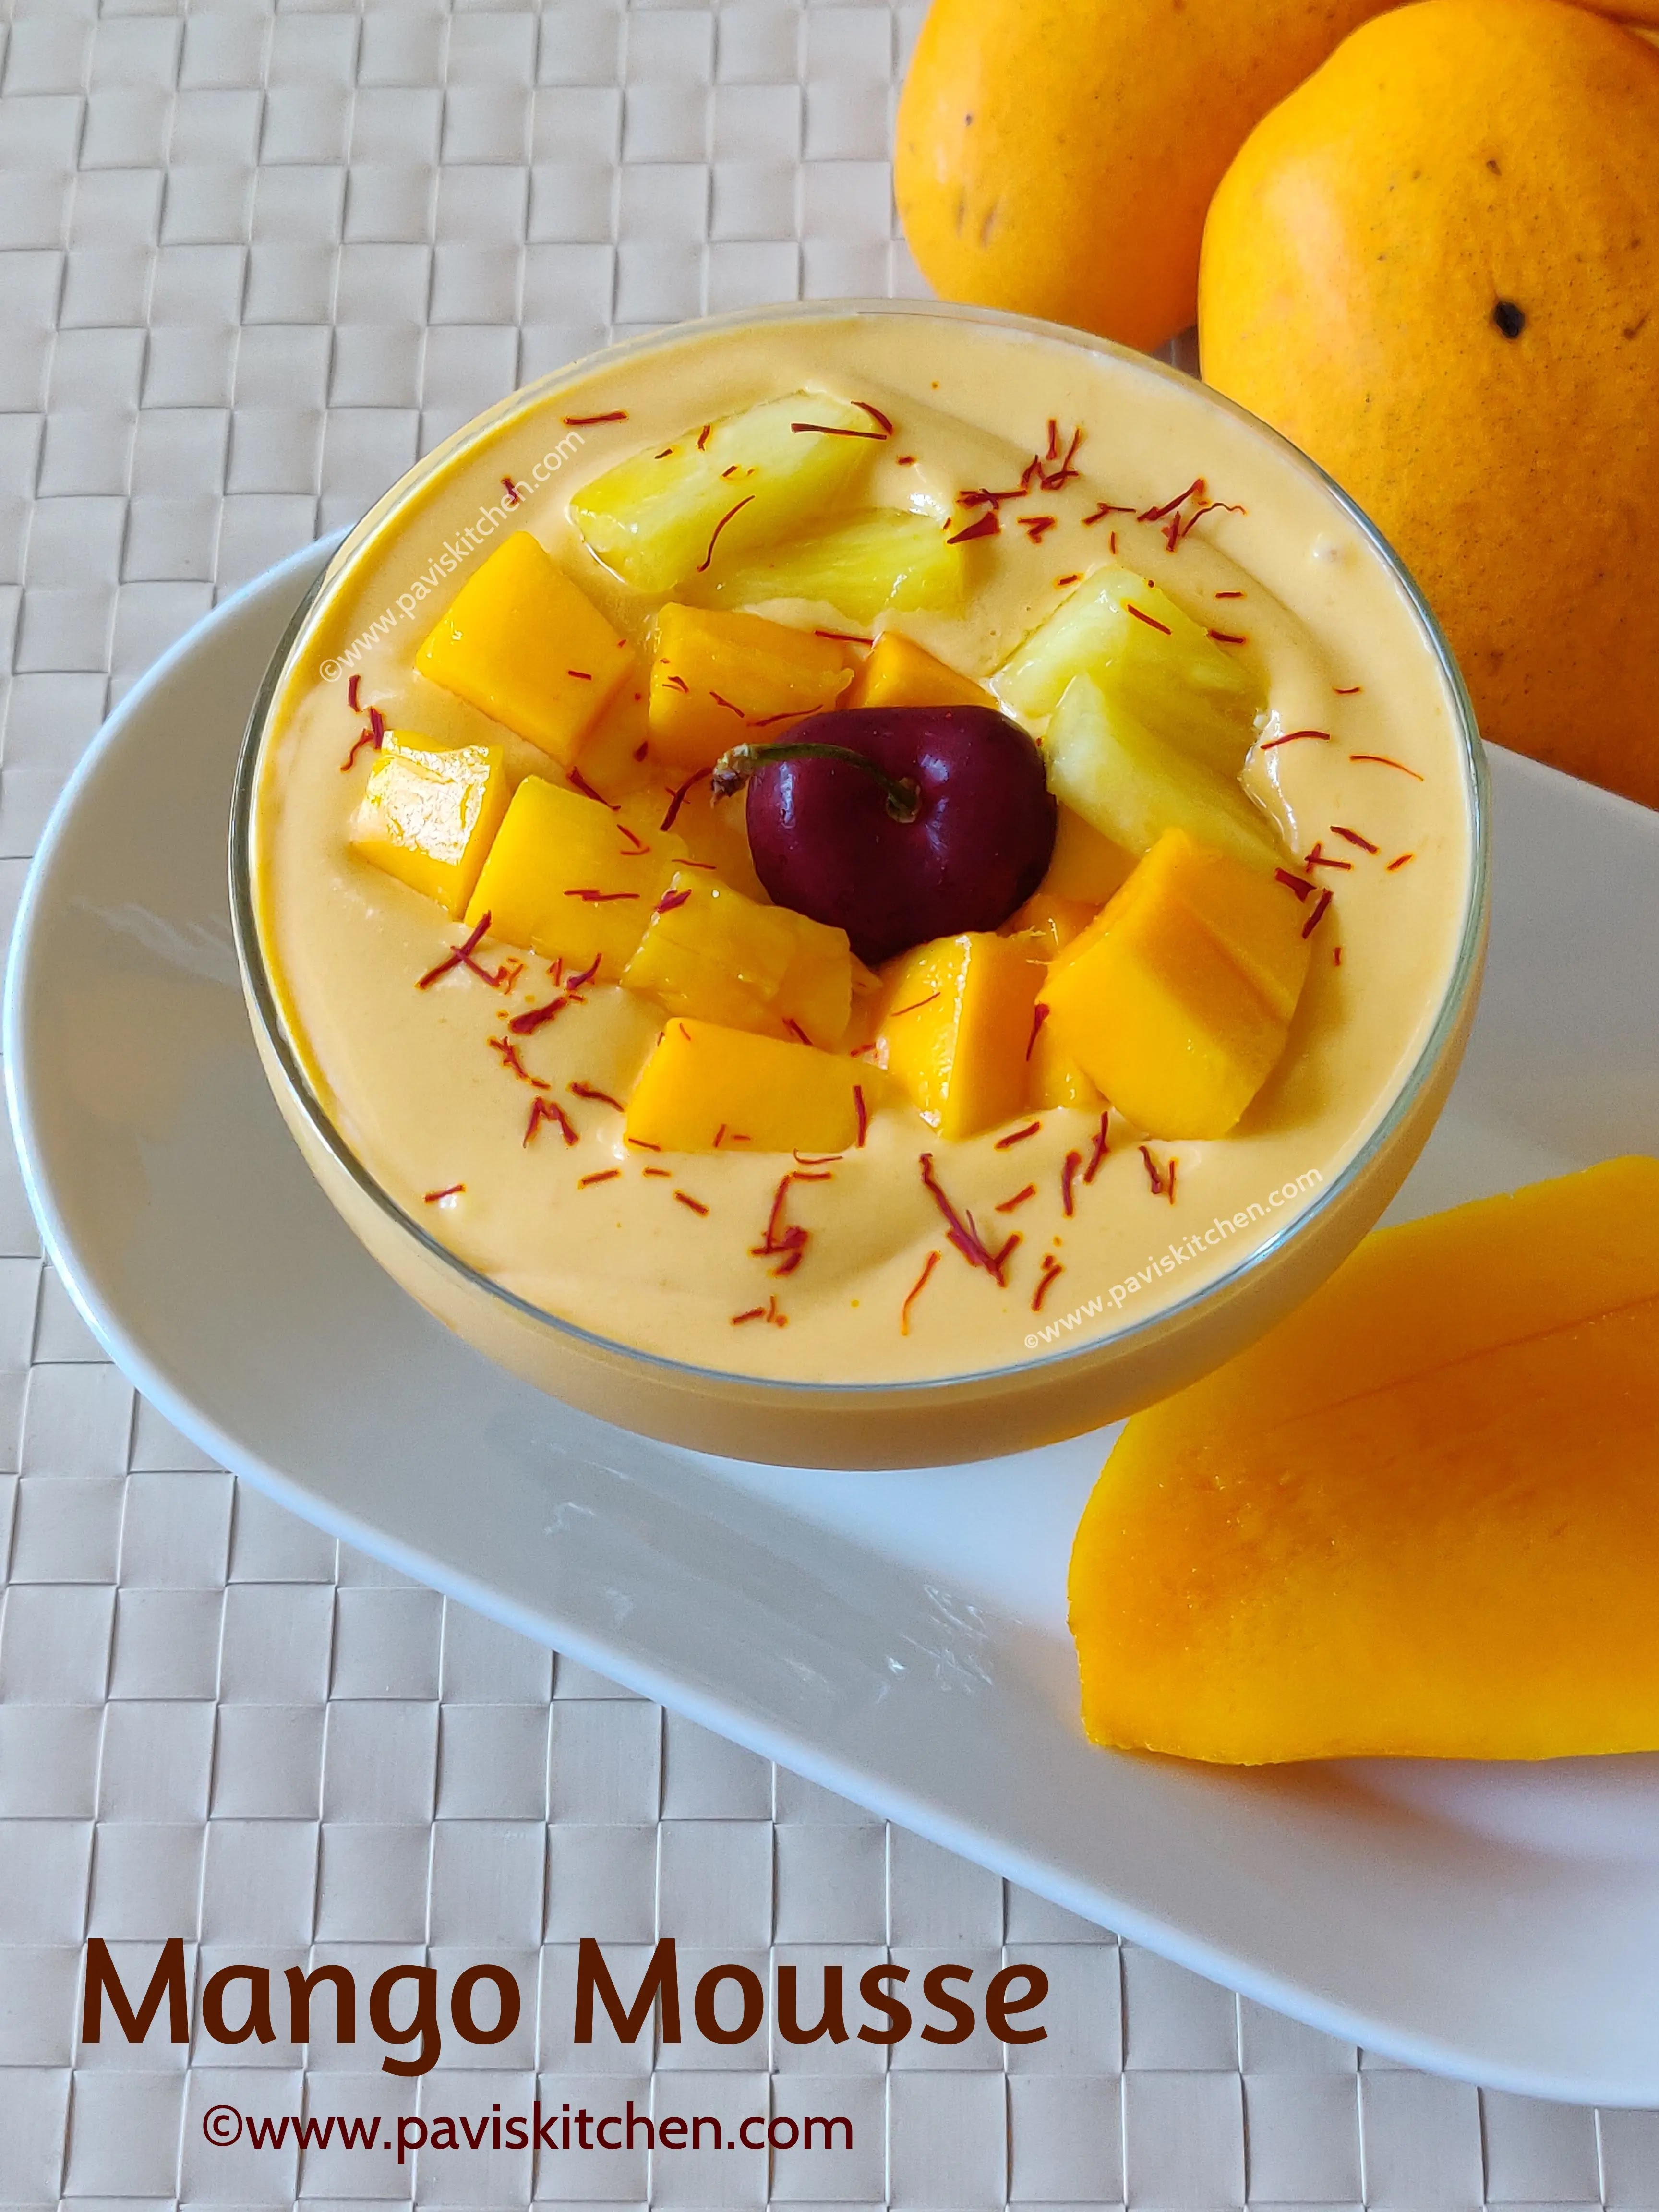 Mango mousse recipe - Indian style | Eggless mango mousse with mango pulp | 3 ingredient mango mousse dessert